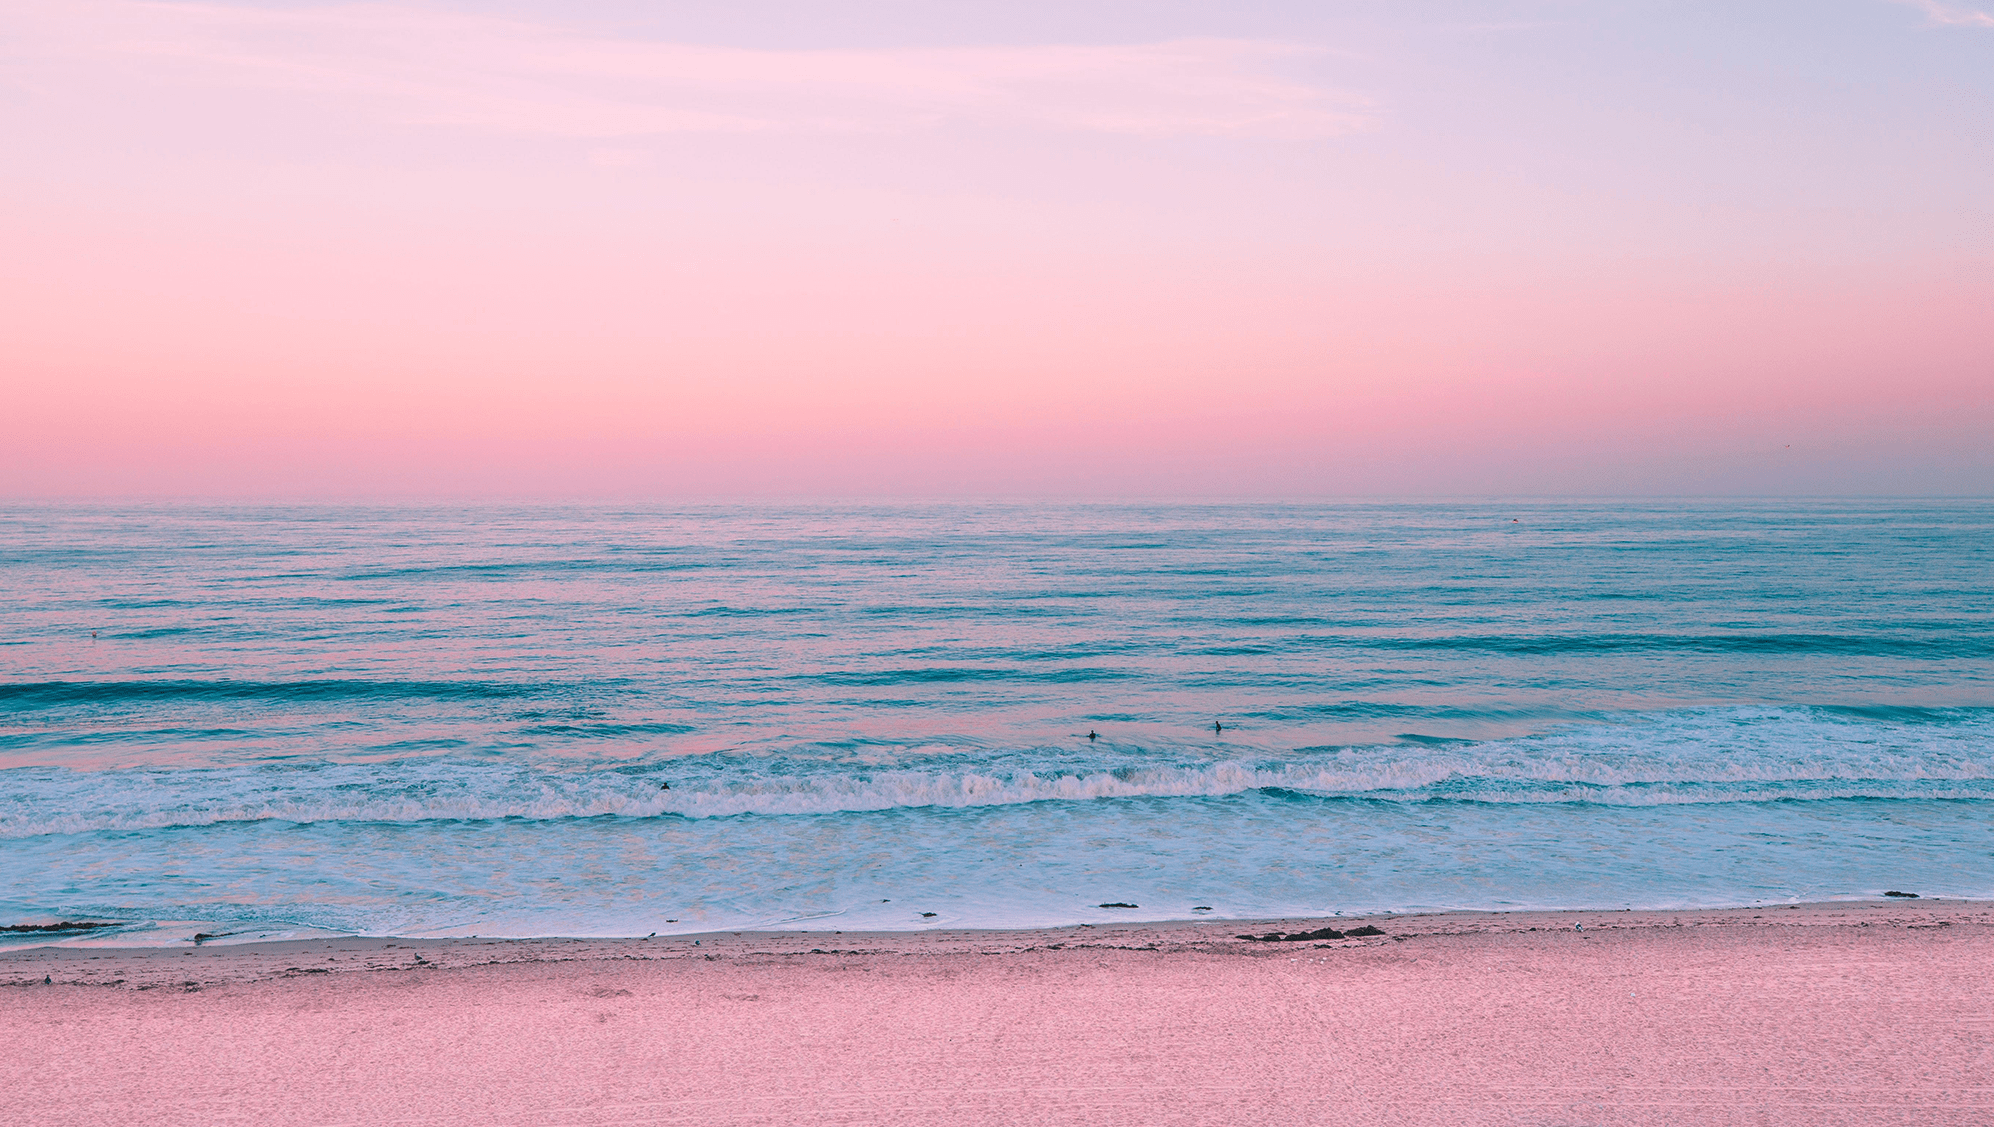 Tận hưởng không gian làm việc hay học tập sáng tạo với bộ sưu tập Pastel Beach Desktop Wallpapers của chúng tôi. Màu sắc nhẹ nhàng và tươi sáng sẽ giúp bạn cảm thấy thư giãn và được tràn đầy năng lượng mới!